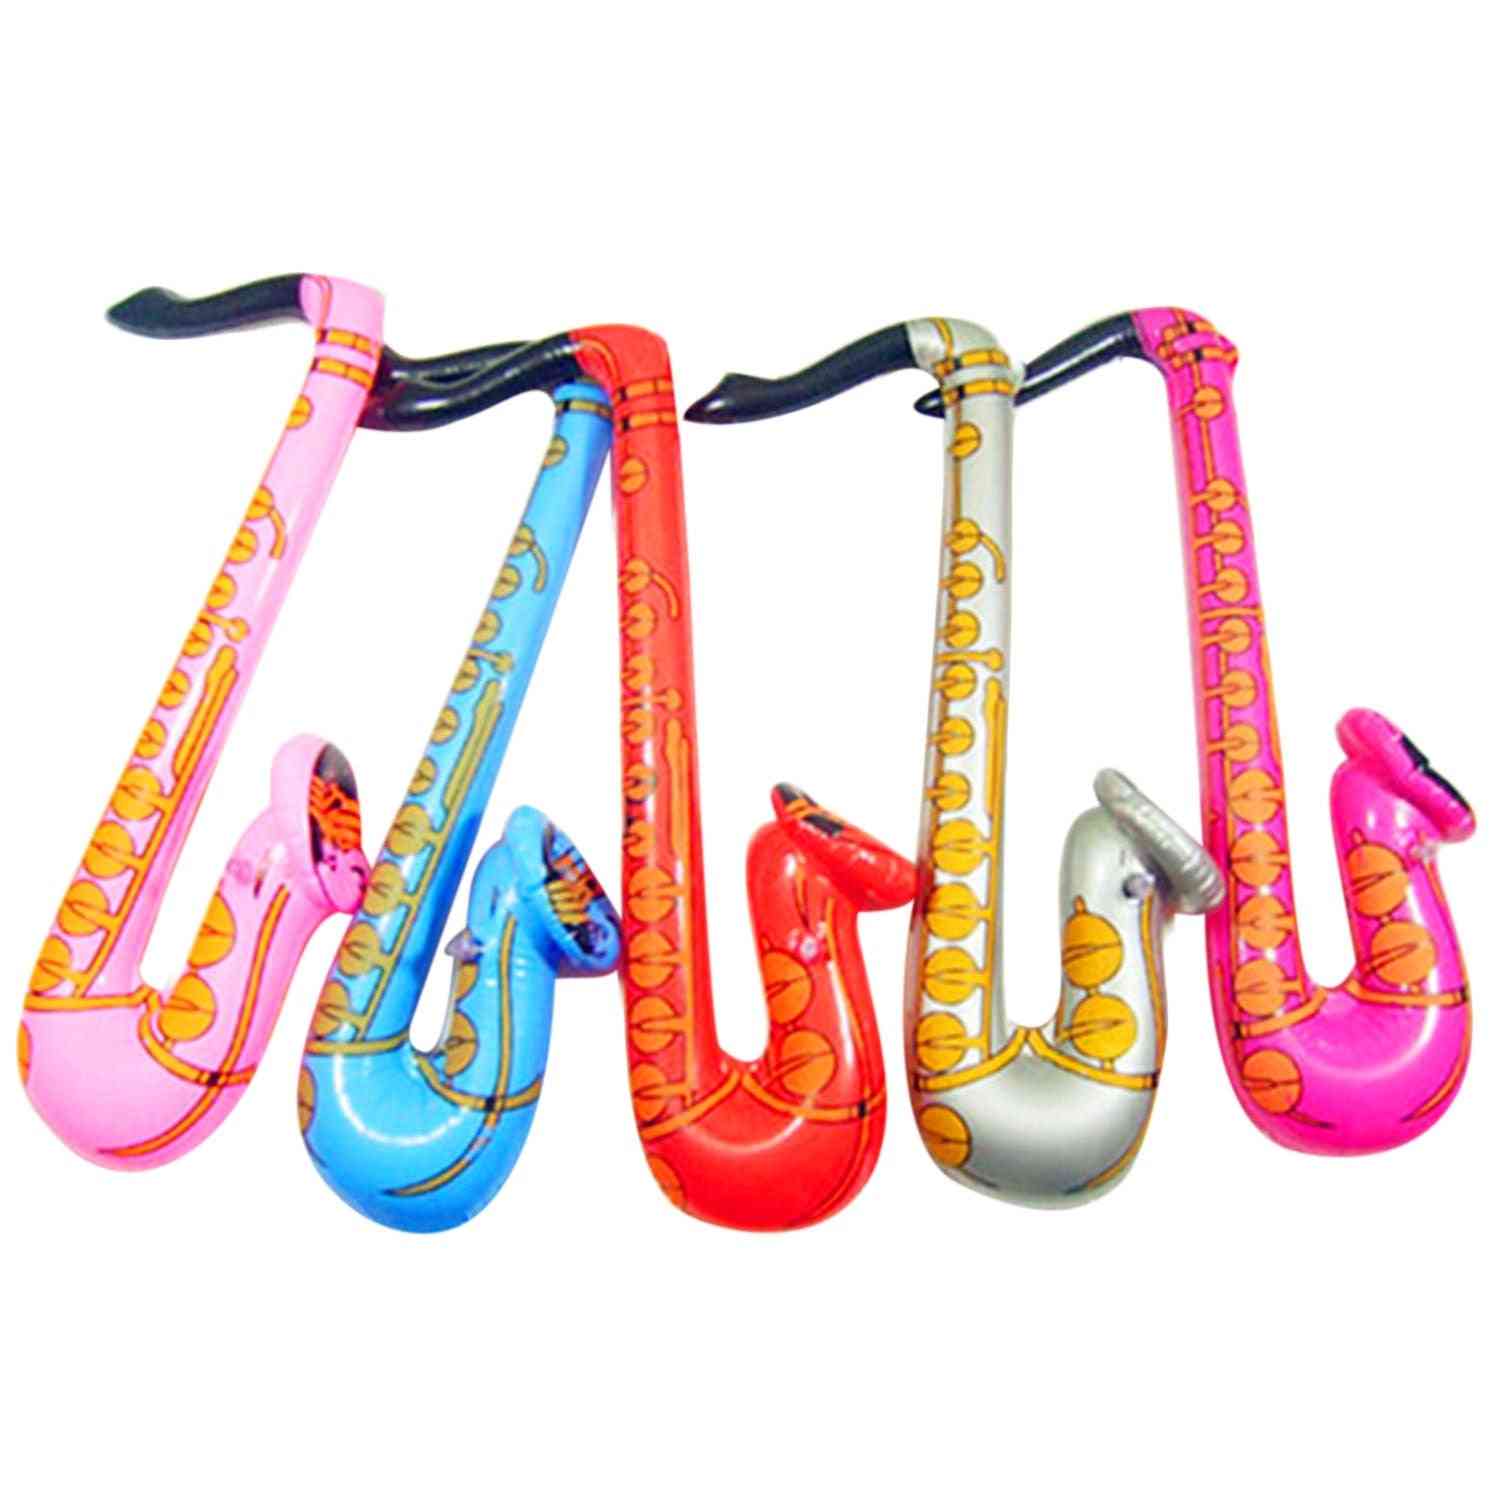 Guitare gonflable, saxophone, microphone, clavier, ballons musicaux instruments jouet pour piscine, accessoires de fête